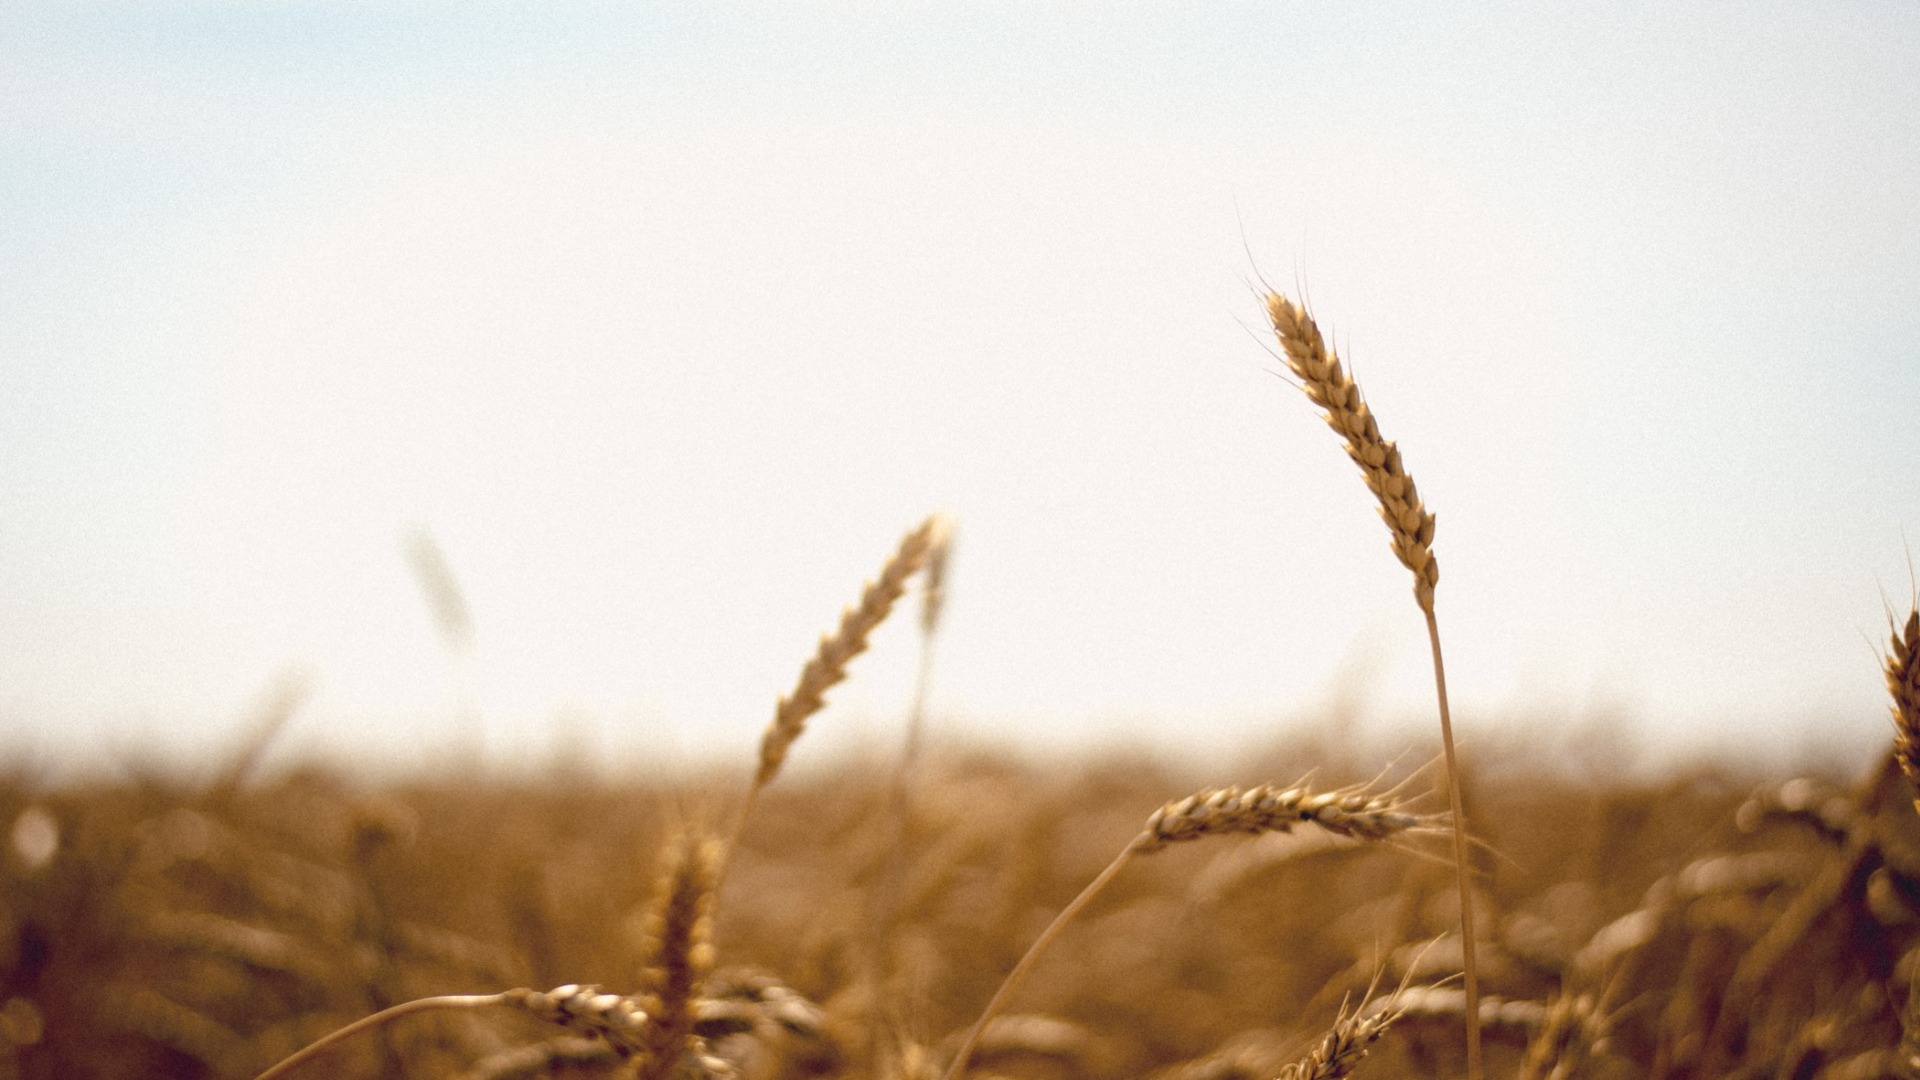 Миллиона тонн зерна в этом году не будет: Из-за засухи Удмуртию ждет неурожай